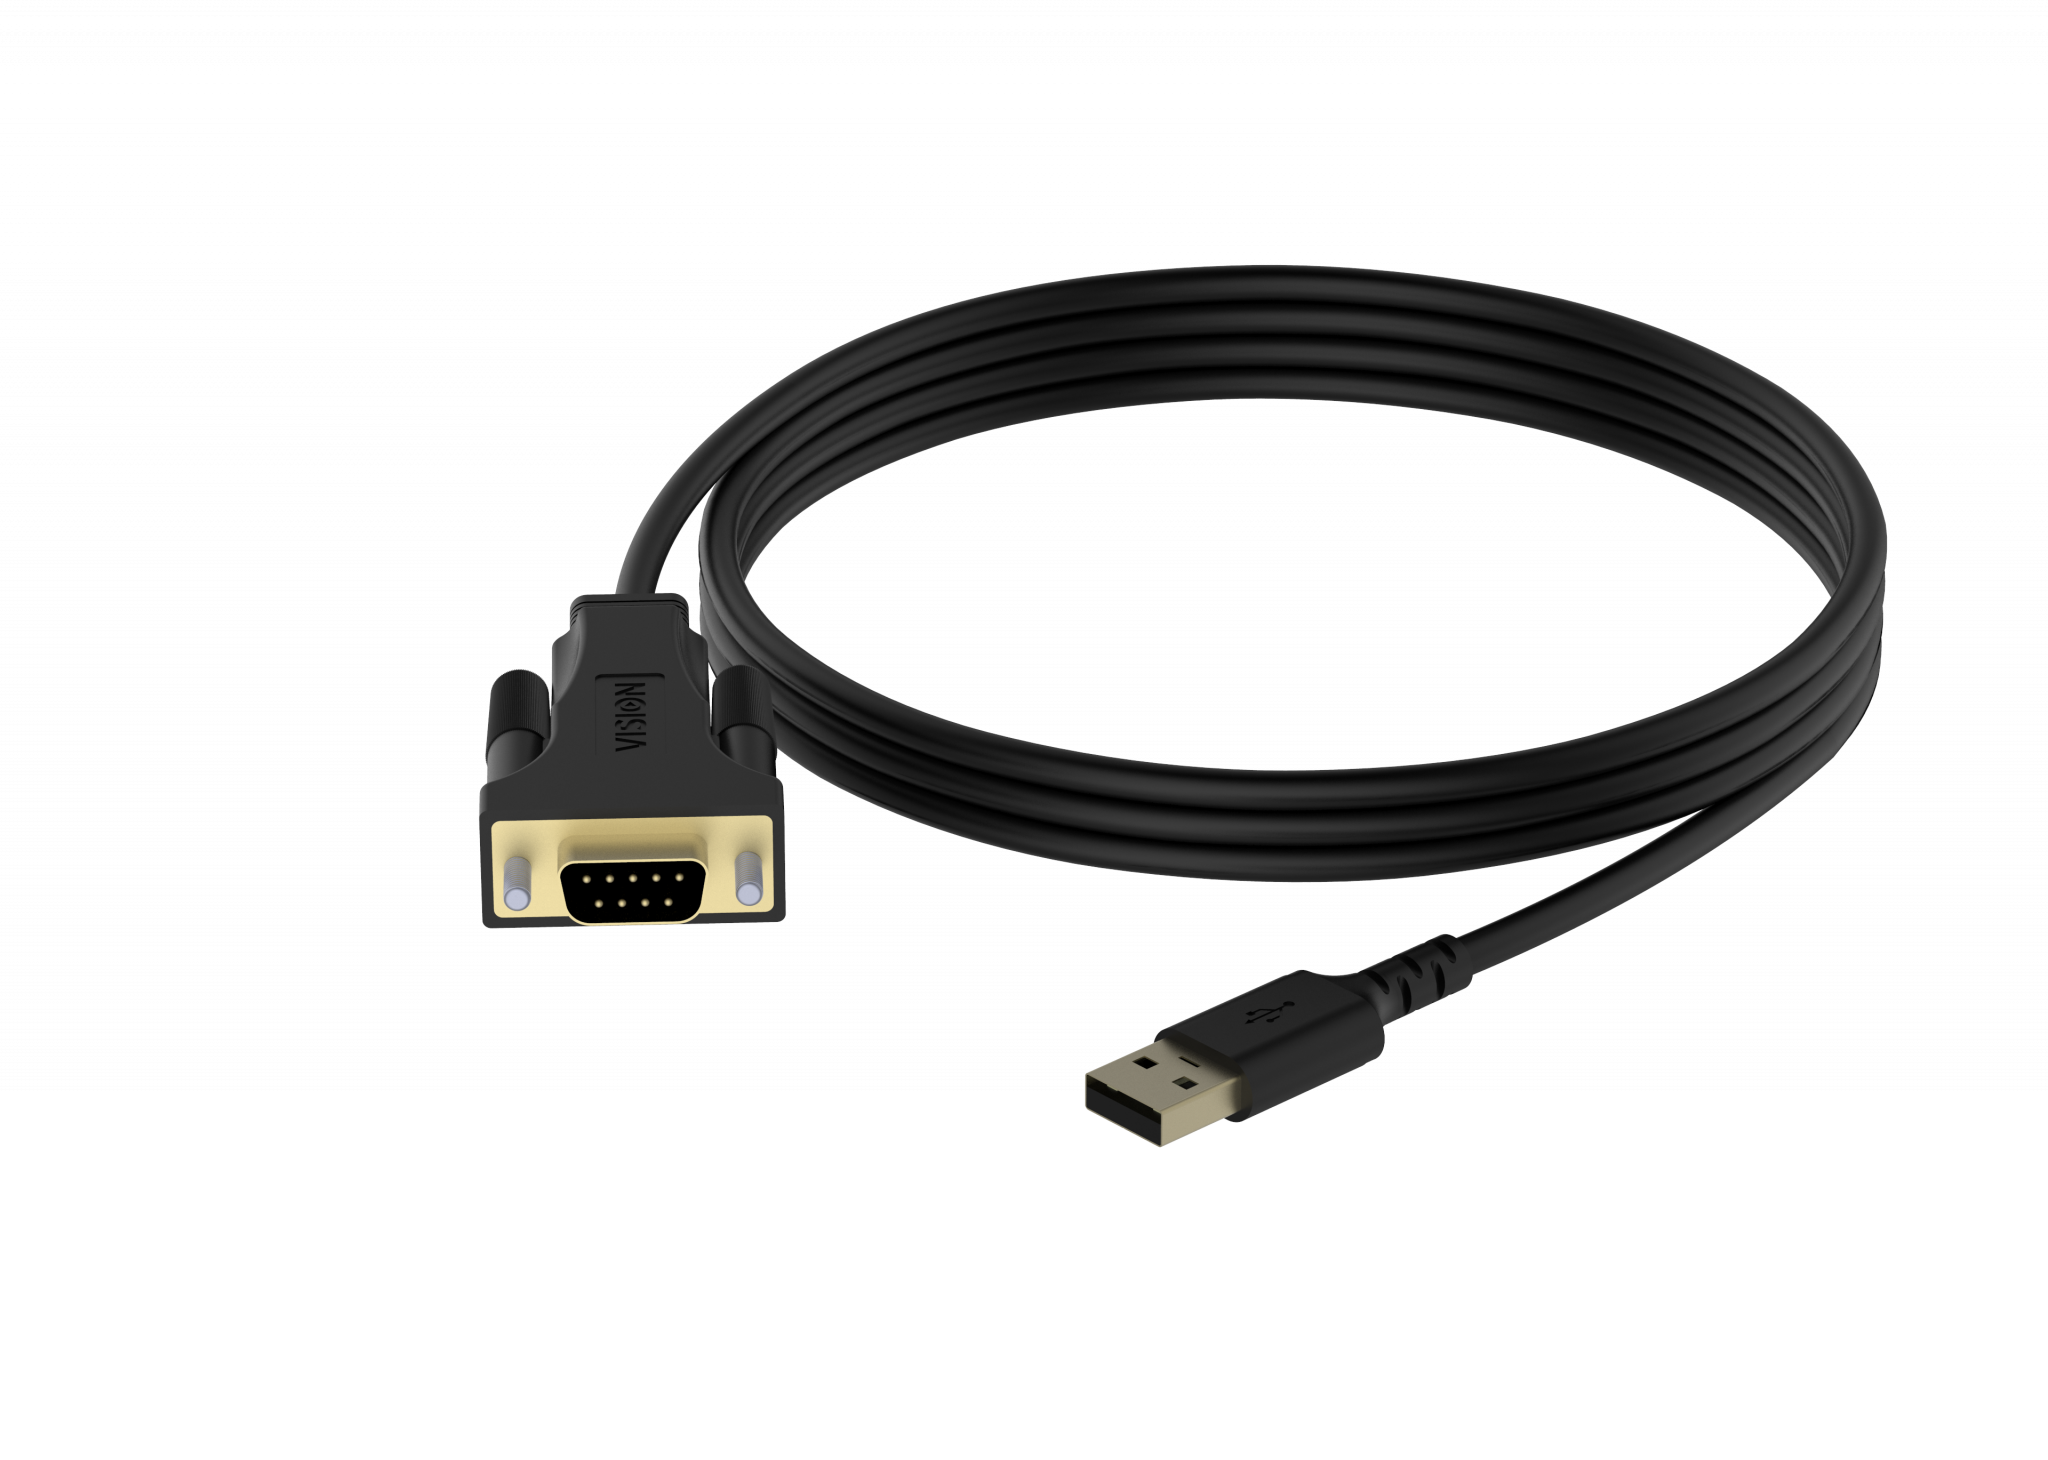 An image showing Adaptador USB 2.0 para série RS-232 de 9 pinos, de qualidade profissional, preto